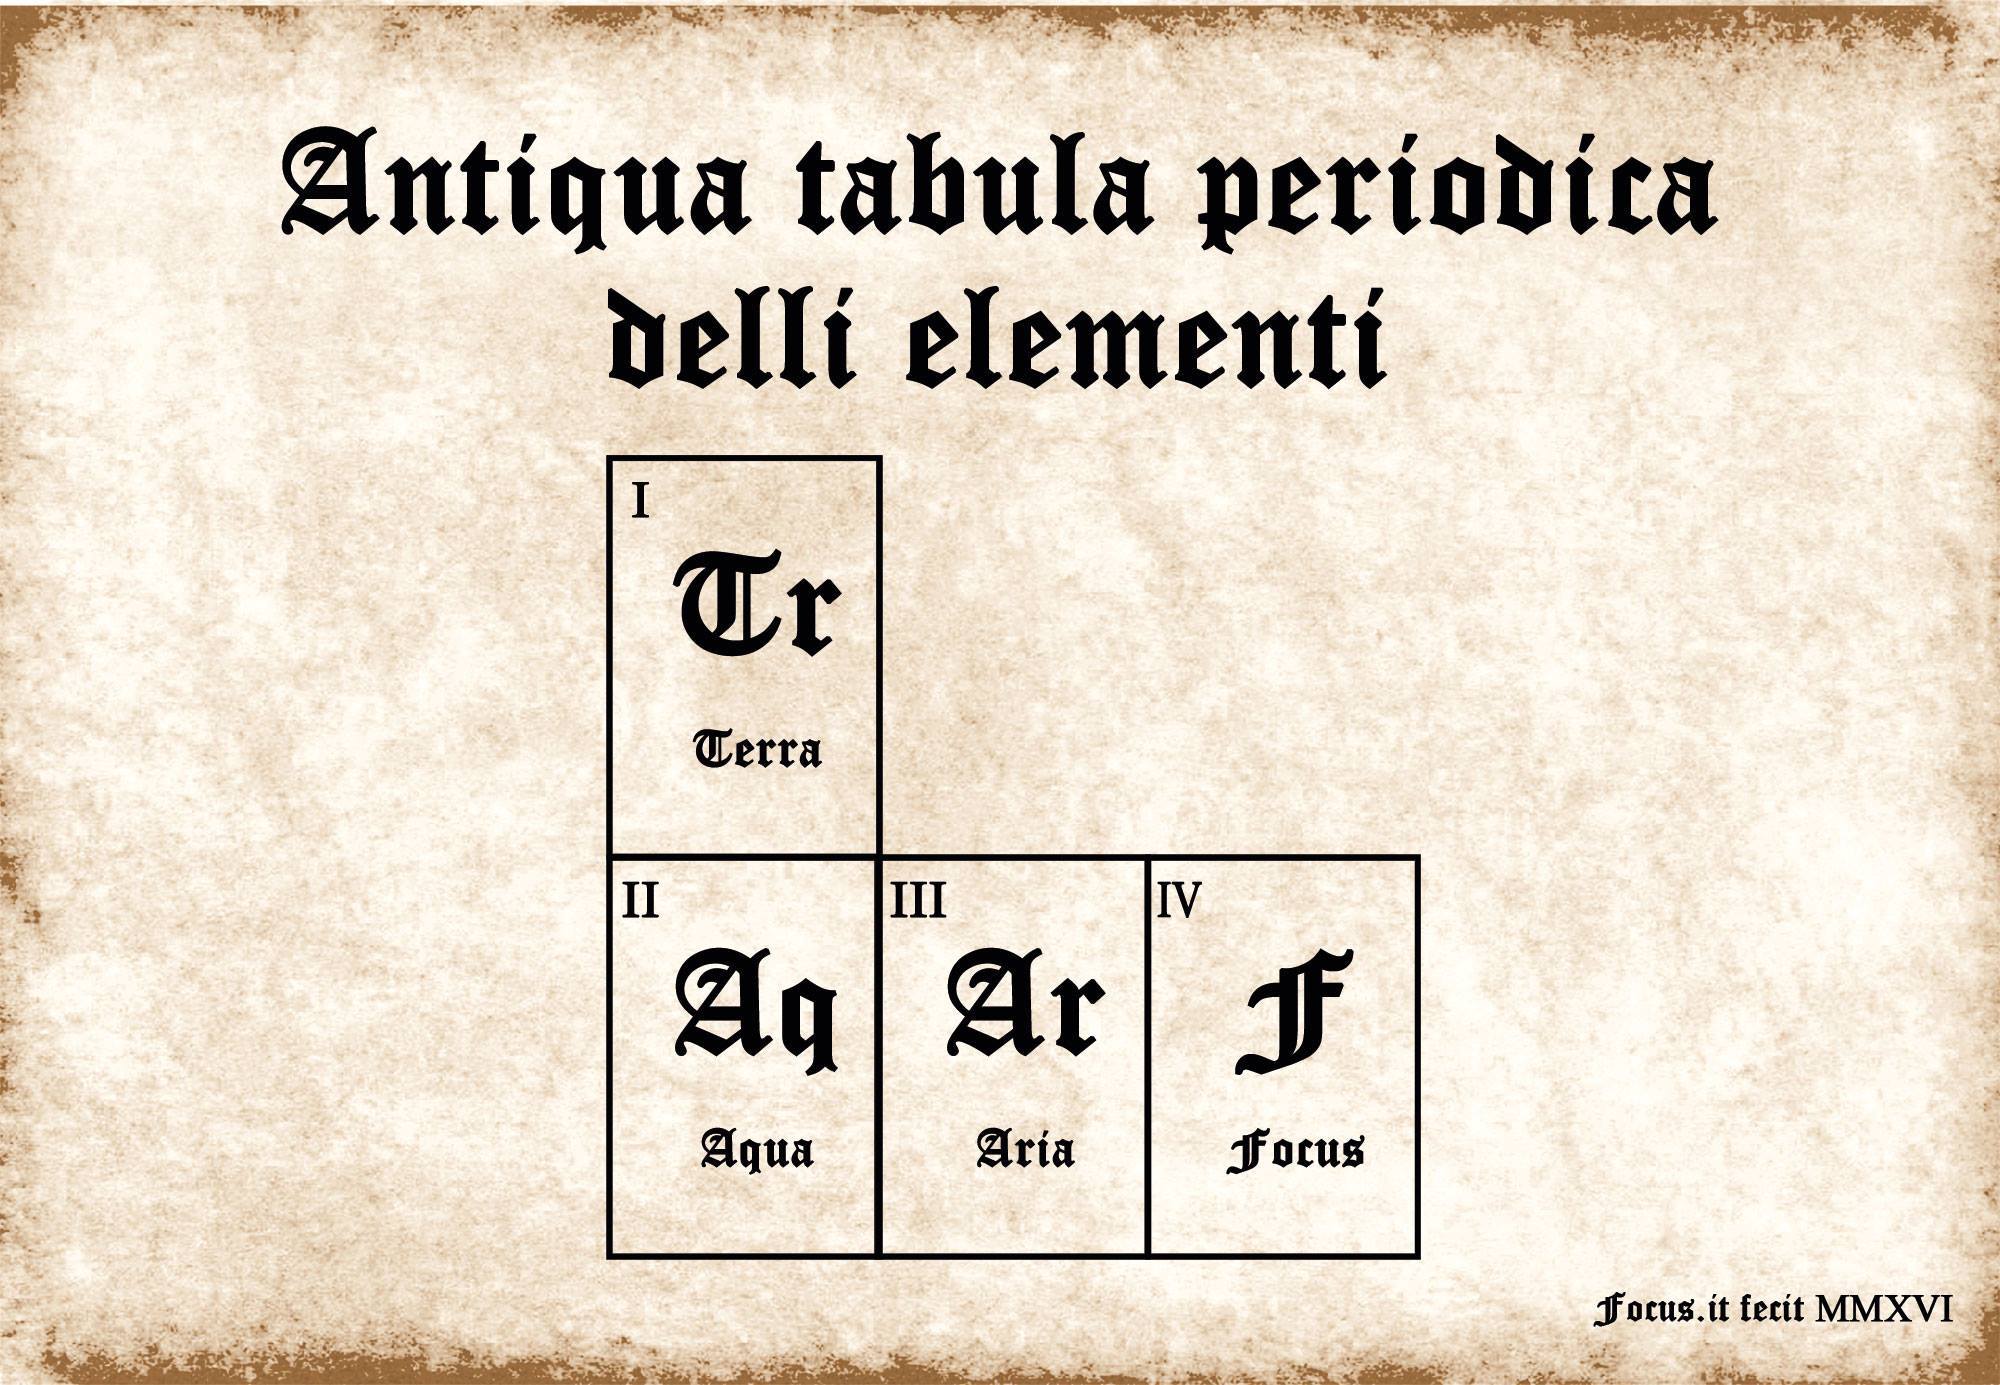 160408.tabula-periodica